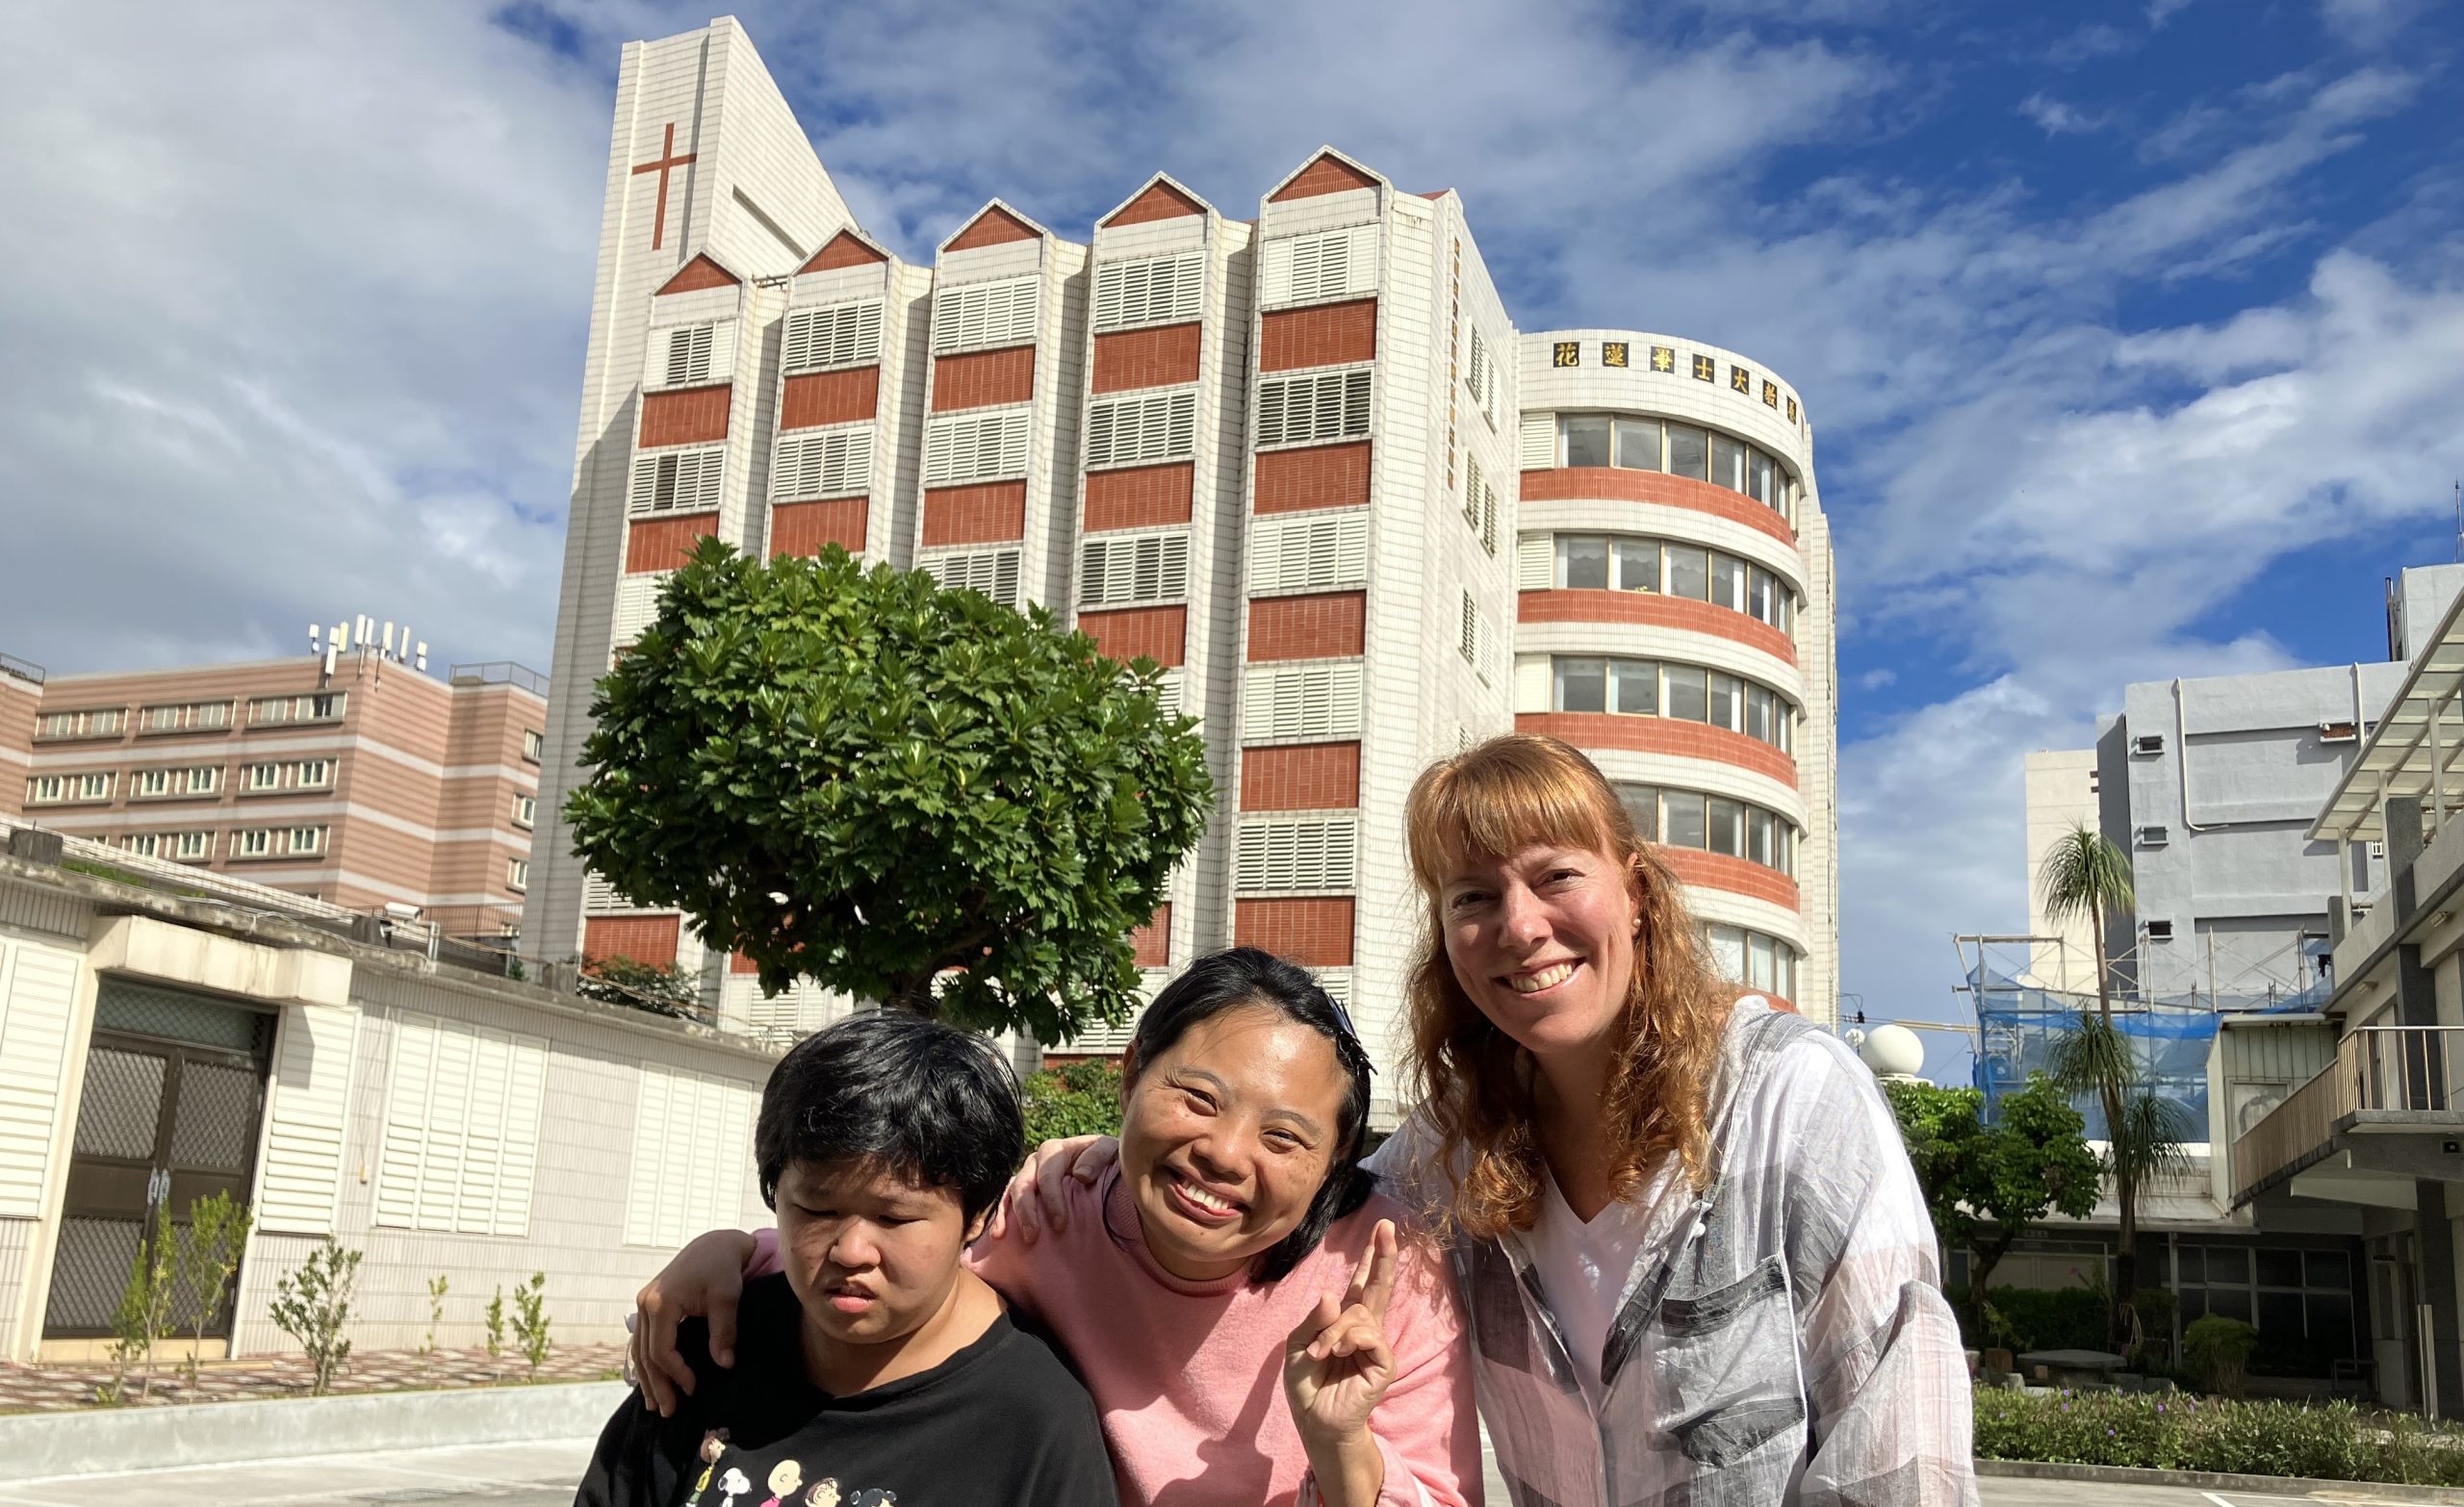 Missionarin Mirjam Wentland und zwei taiwanische Frauen stehen vor dem Haus der Freude von Bethesda.